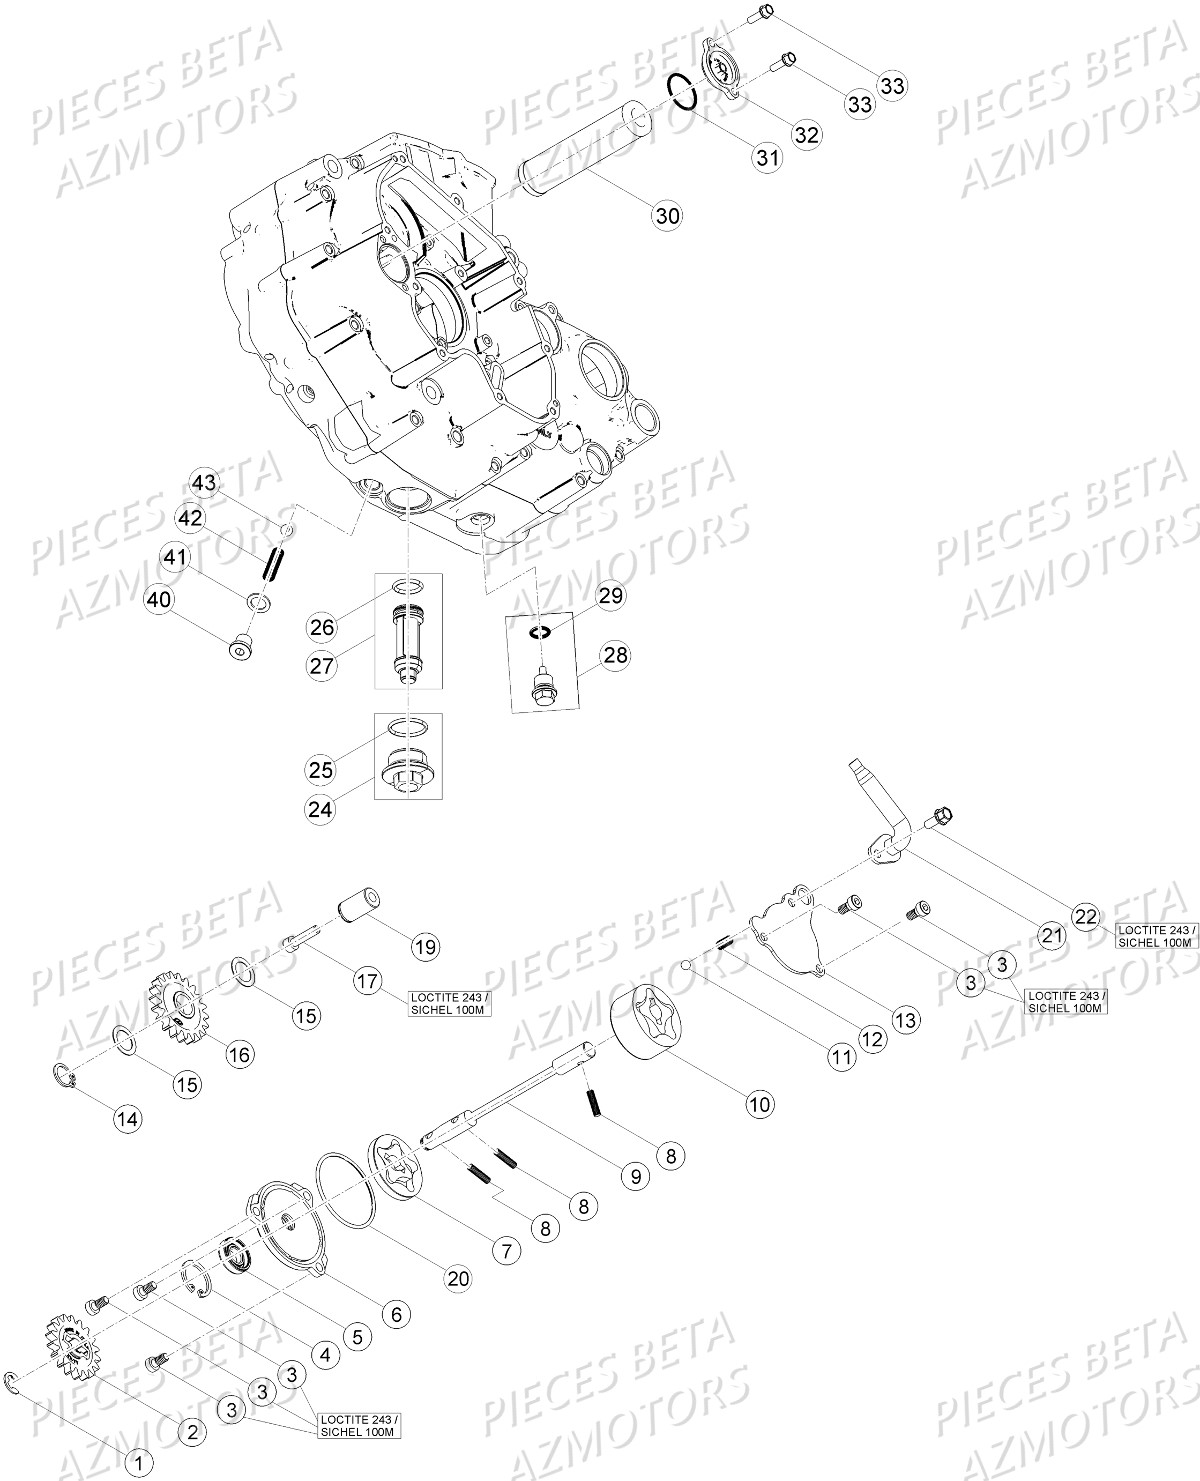 Circuit De Lubrification BETA Pièces Beta RR 4T 390 Enduro - 2016